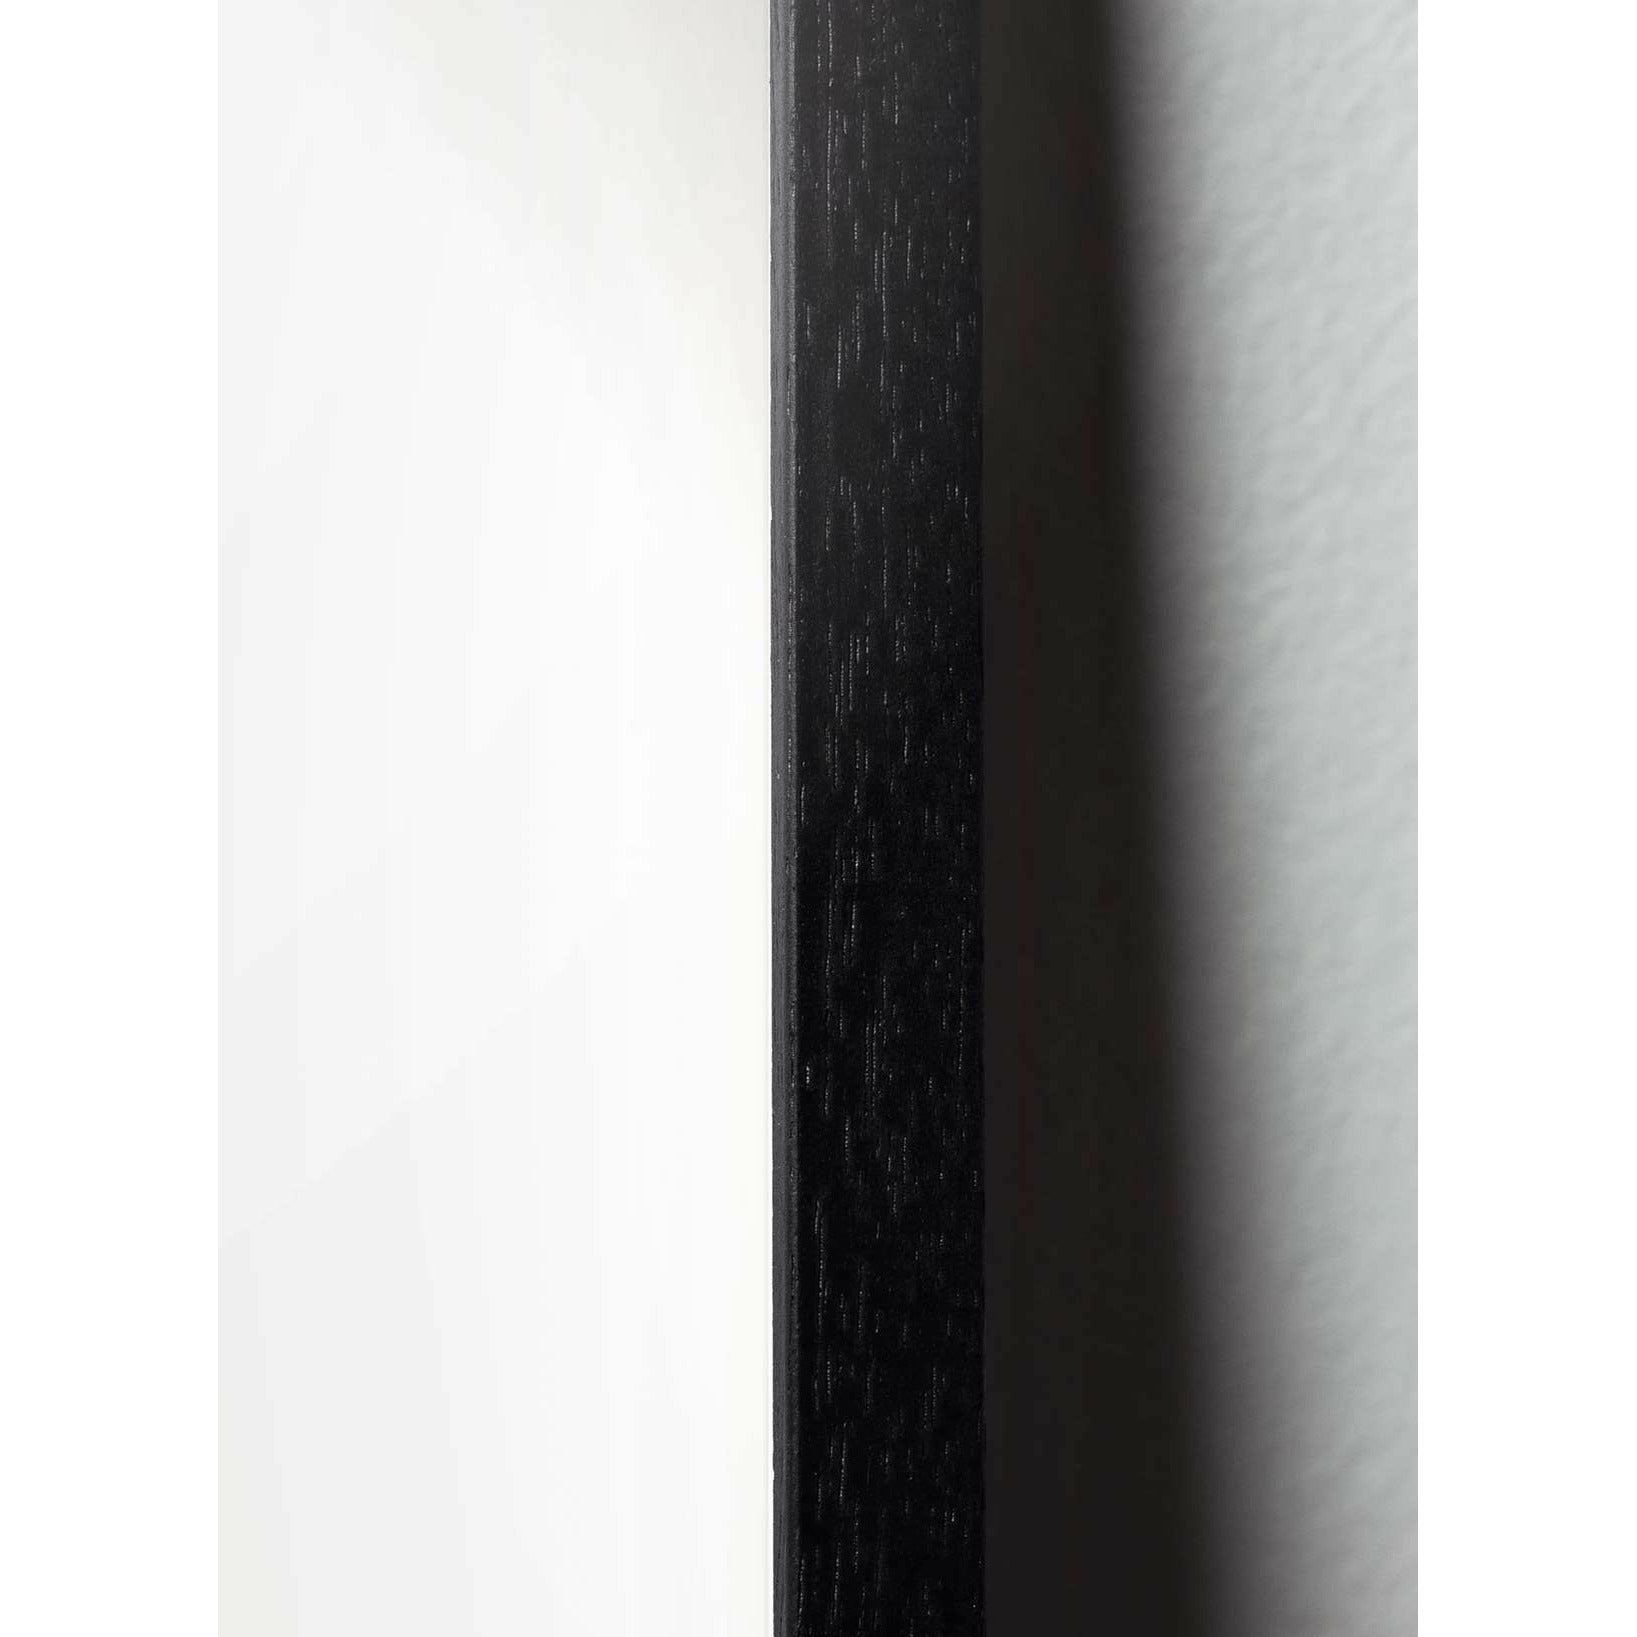 Brainchild Blumenpot klassisches Poster, Rahmen in schwarz lackiertem Holz 70x100 cm, schwarzer Hintergrund